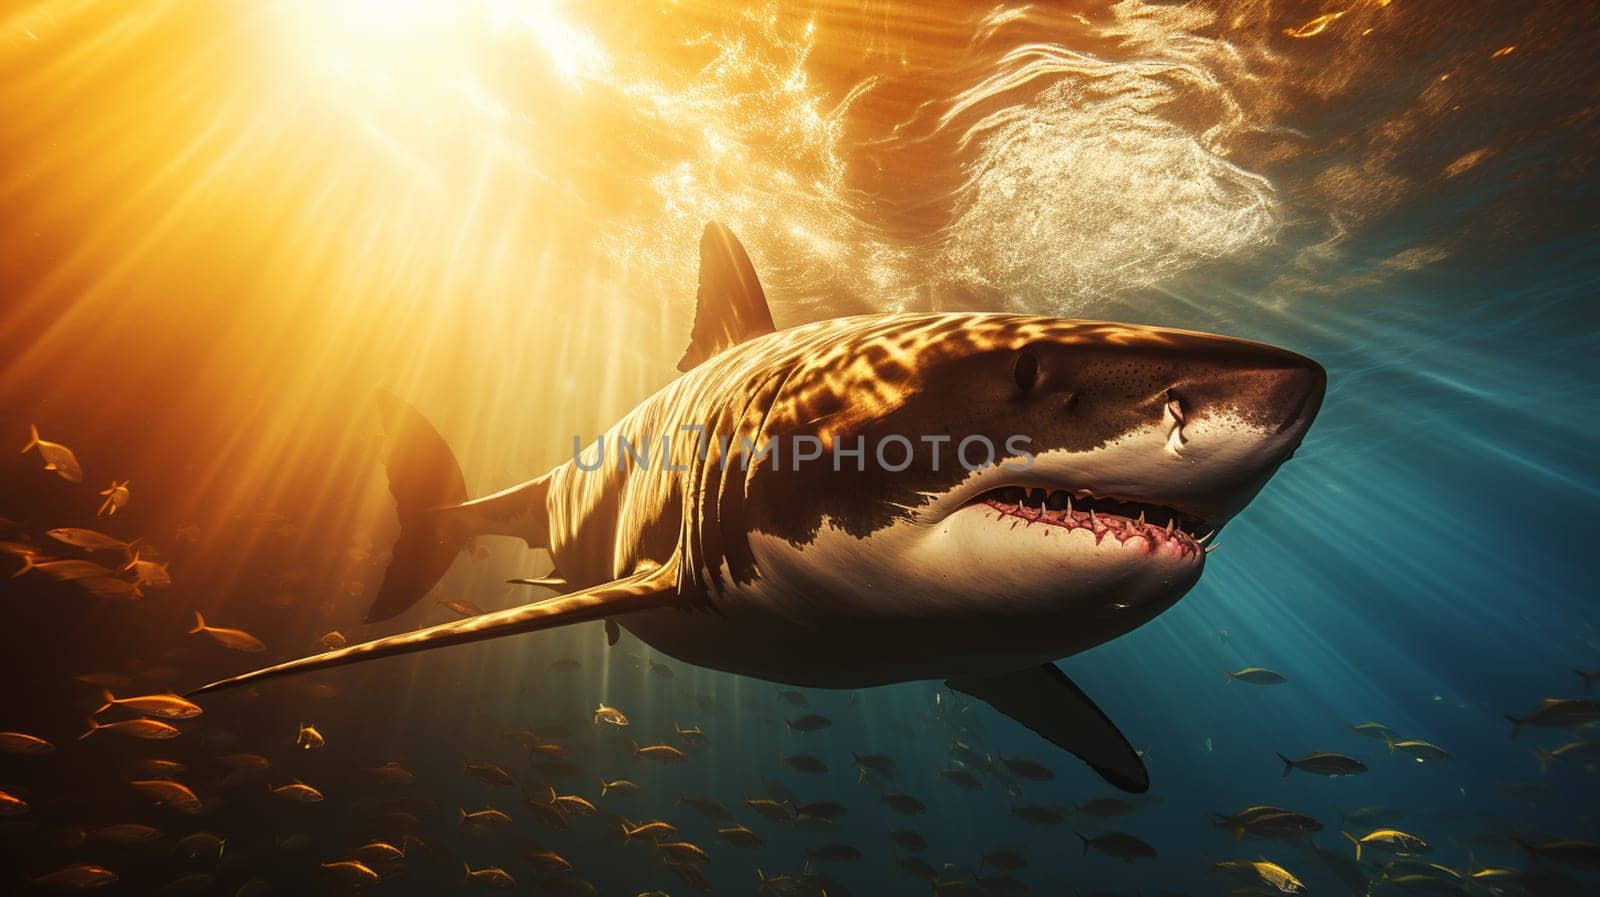 Dangerous Shark Wallpaper For Desktop . High quality photo